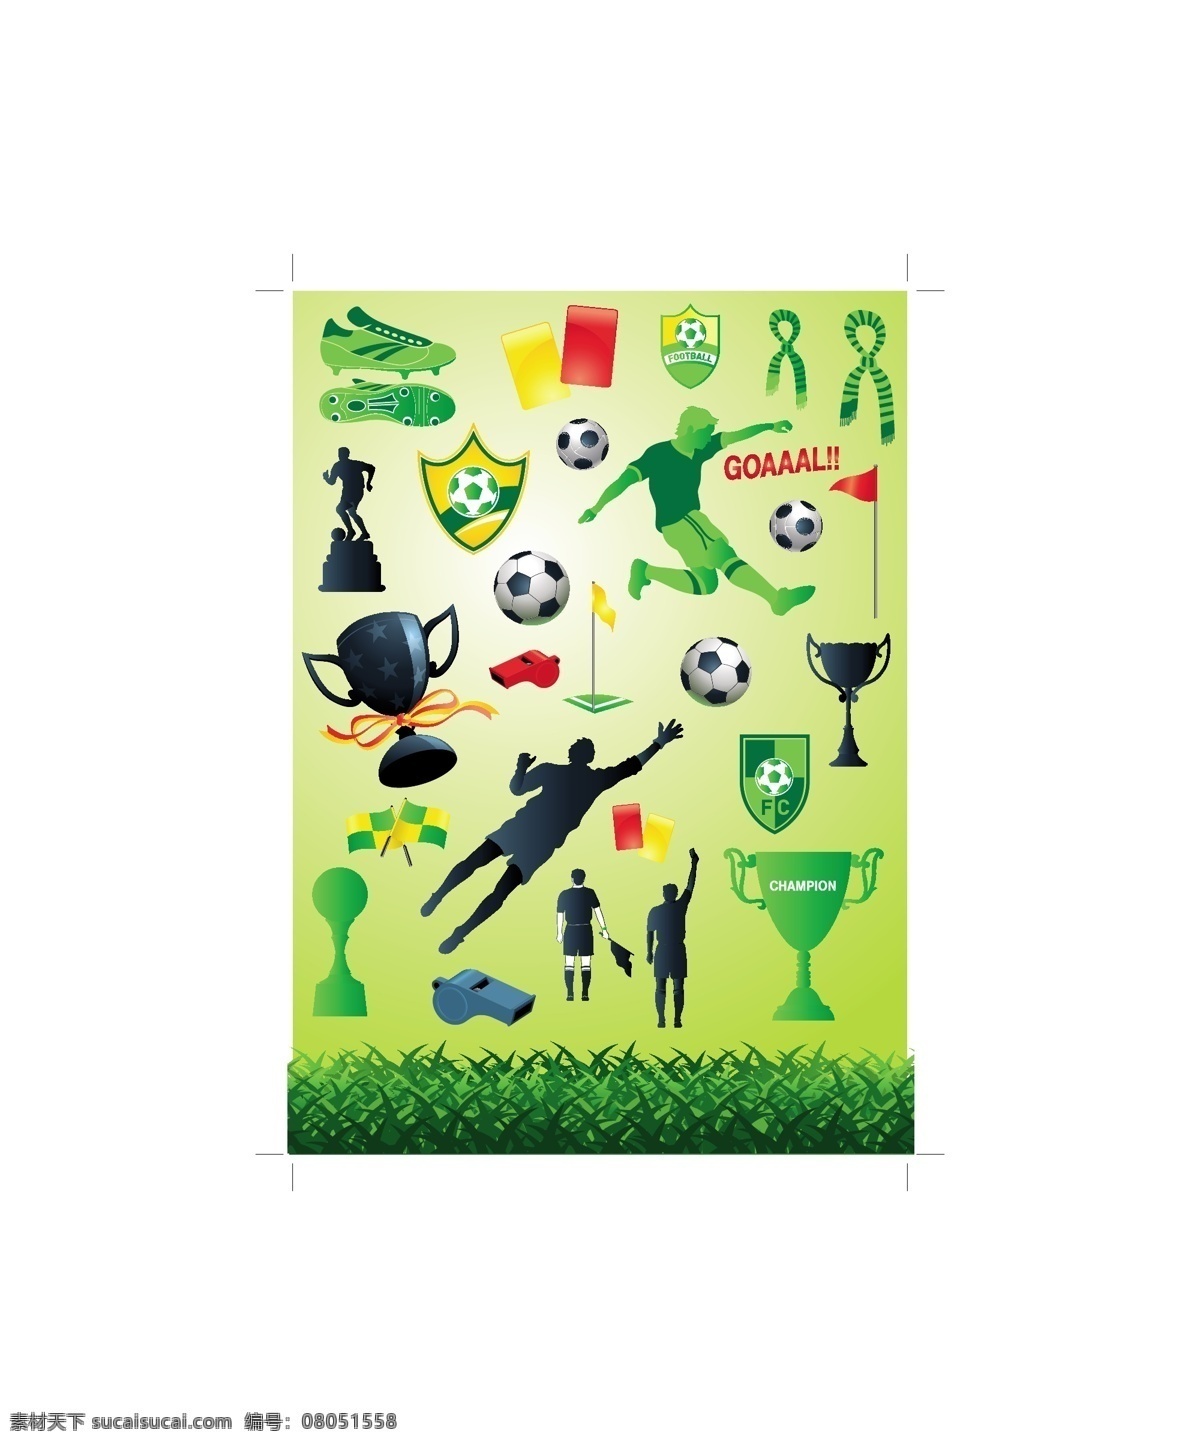 世界杯 足球 主题 矢量 设计图 草地 奖杯 金杯 绿地 绿茵 旗帜 球鞋 矢量素材 踢球 国际足联 2010 年 哨子 红牌 黄牌 运动 免费 下 海报 其他海报设计